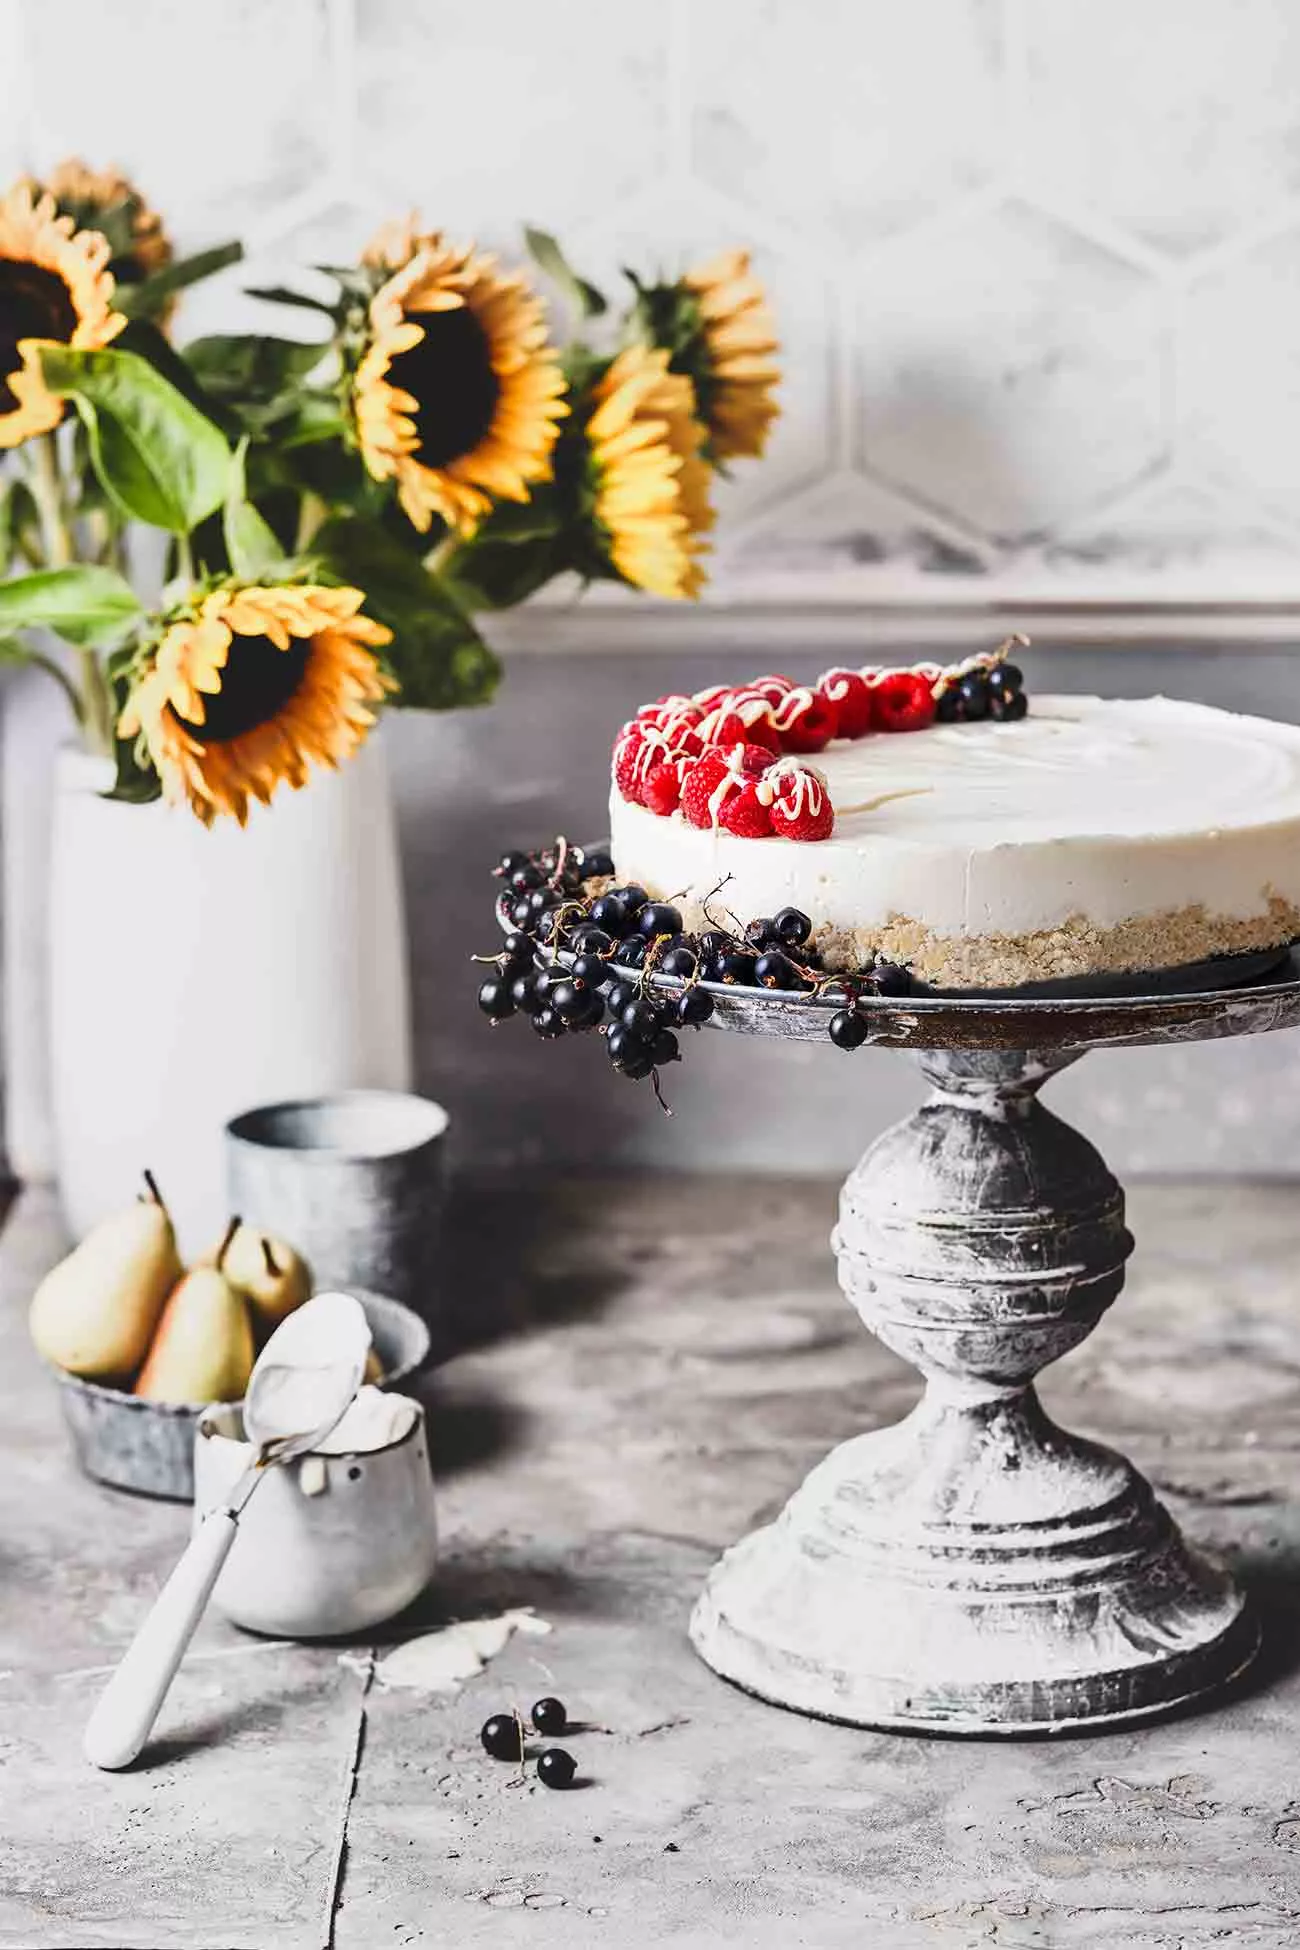 Dieser No-Bake Kokos-Cheesecake ist ein einfaches, so leckeres Dessert ohne Backen, perfekt für das sonnige Wochenende. Die Füllung besteht aus Frischkäse, Sahne und Kokosmilch. Das Topping ist eine Mischung aus fruchtigen Himbeeren und einem Hauch weißer Schokolade. 